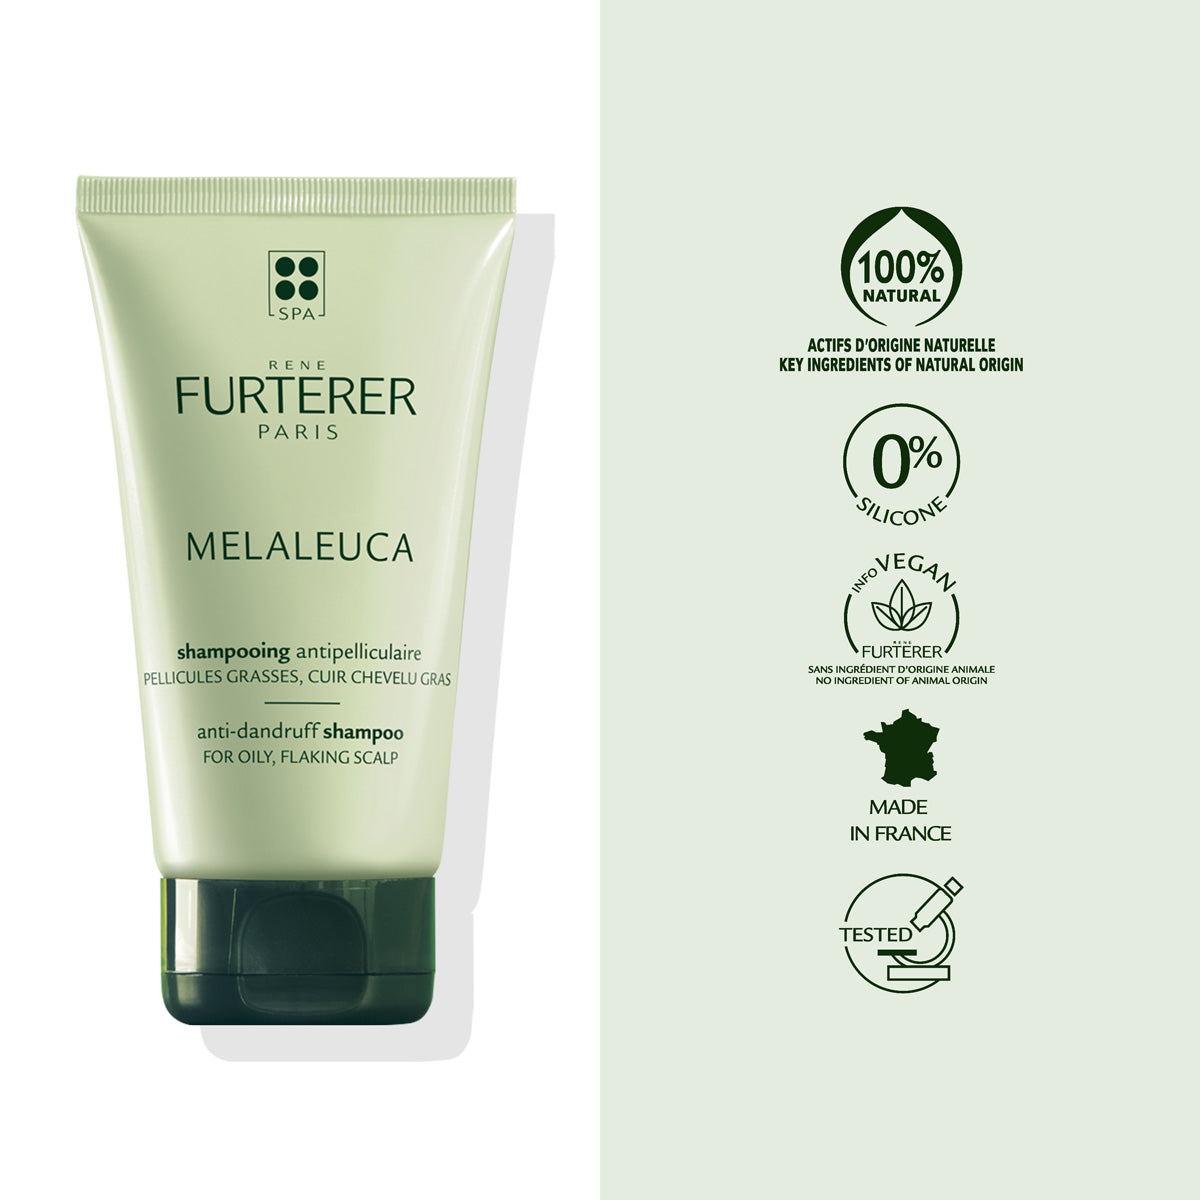 Rene Furtere|Melaleuca Anti-Dandruff Shampoo For Oily, Flaky Scalp|150ml